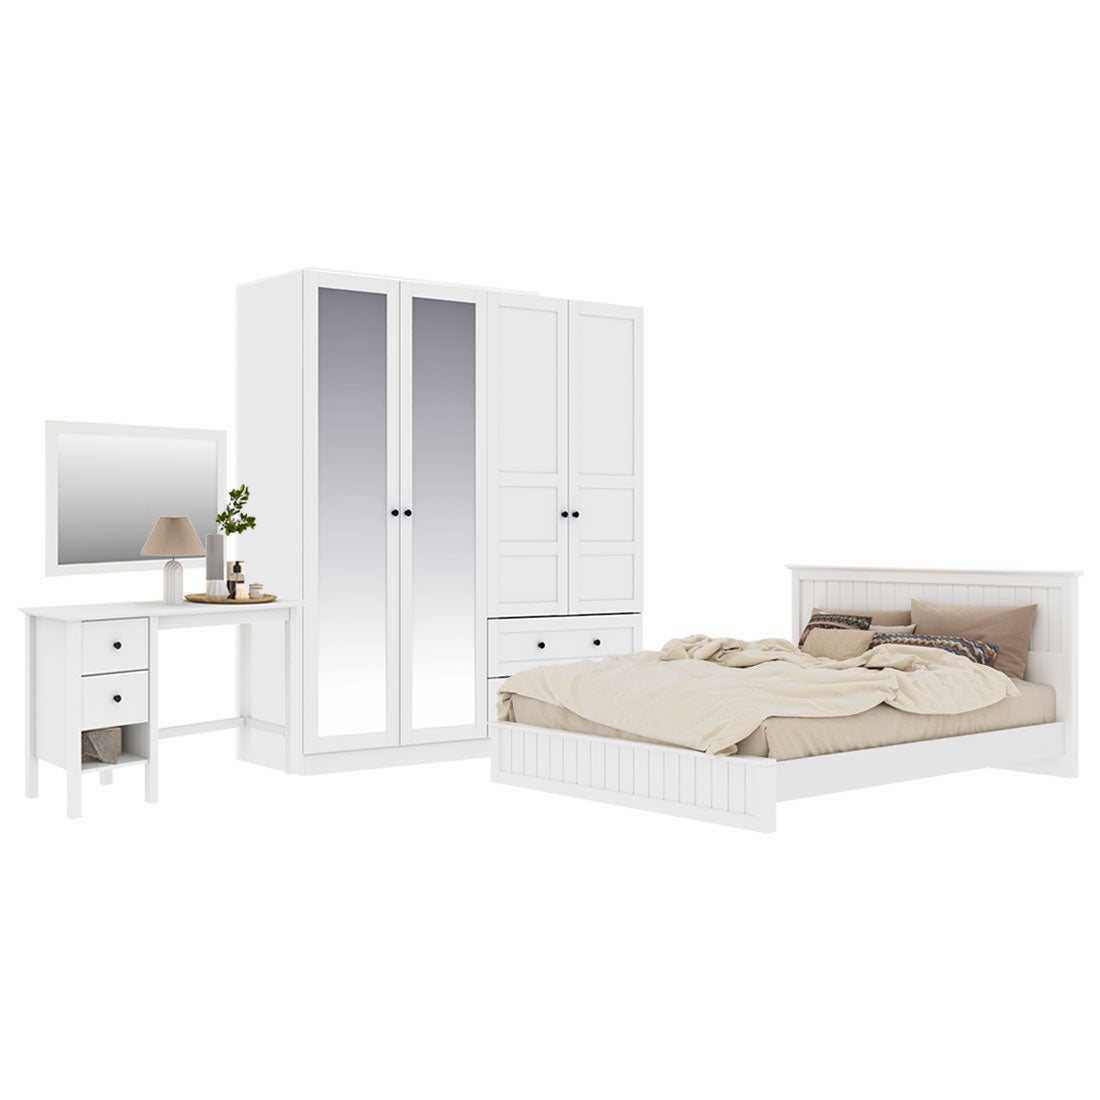 ชุดห้องนอน ขนาด 6 ฟุต รุ่น Moneta & ตู้บานเปิด 180 ซม. สีขาว01